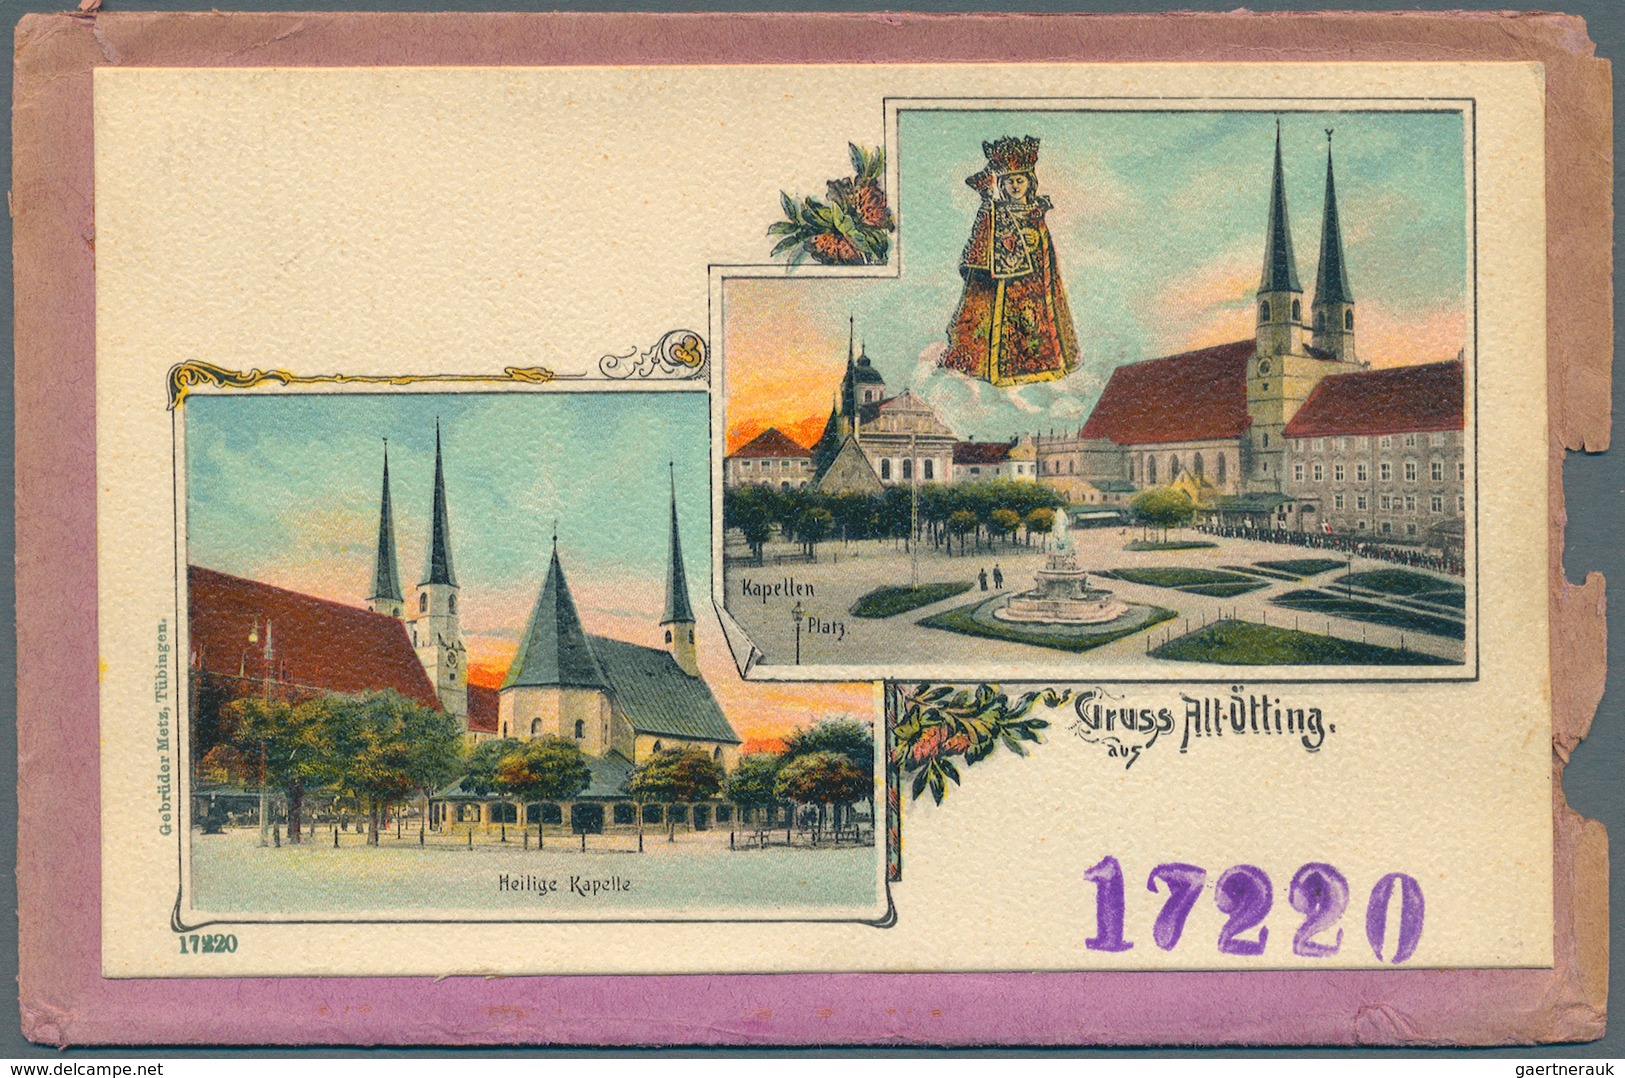 Ansichtskarten: Deutschland: Gigantischer Posten mit weit über 170.000 meist alten Ansichtskarten (c